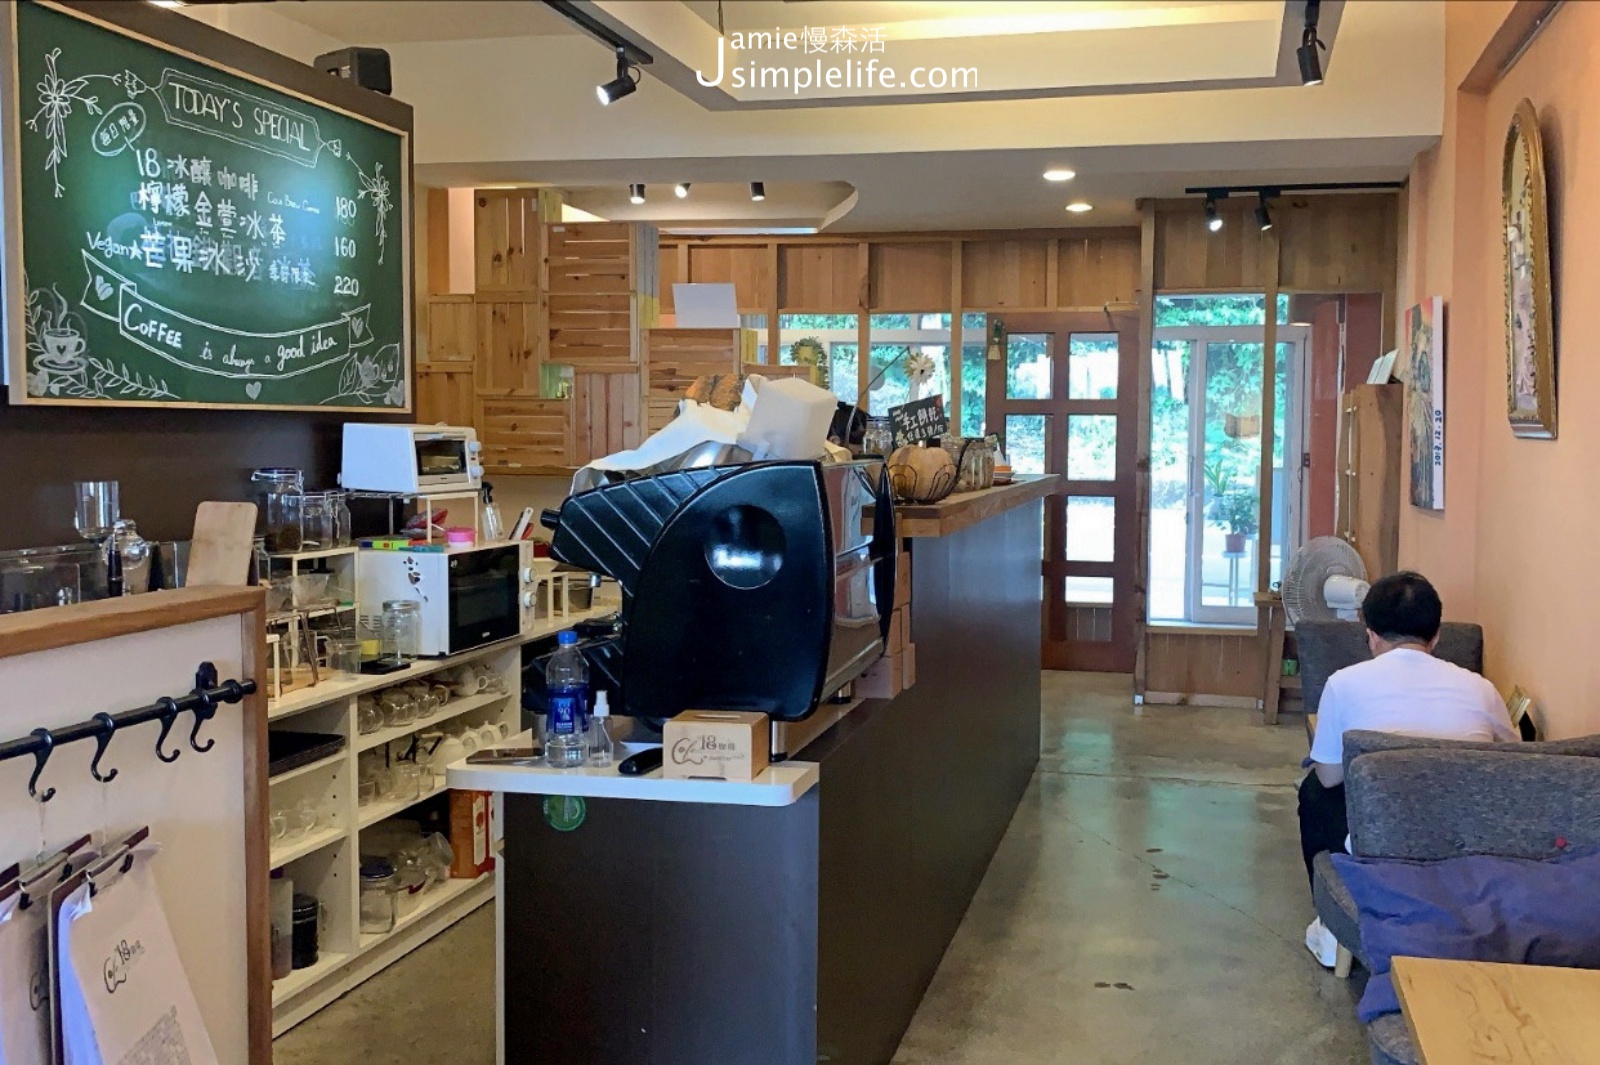 開在新北石碇區台9線上的18咖啡 店內空間